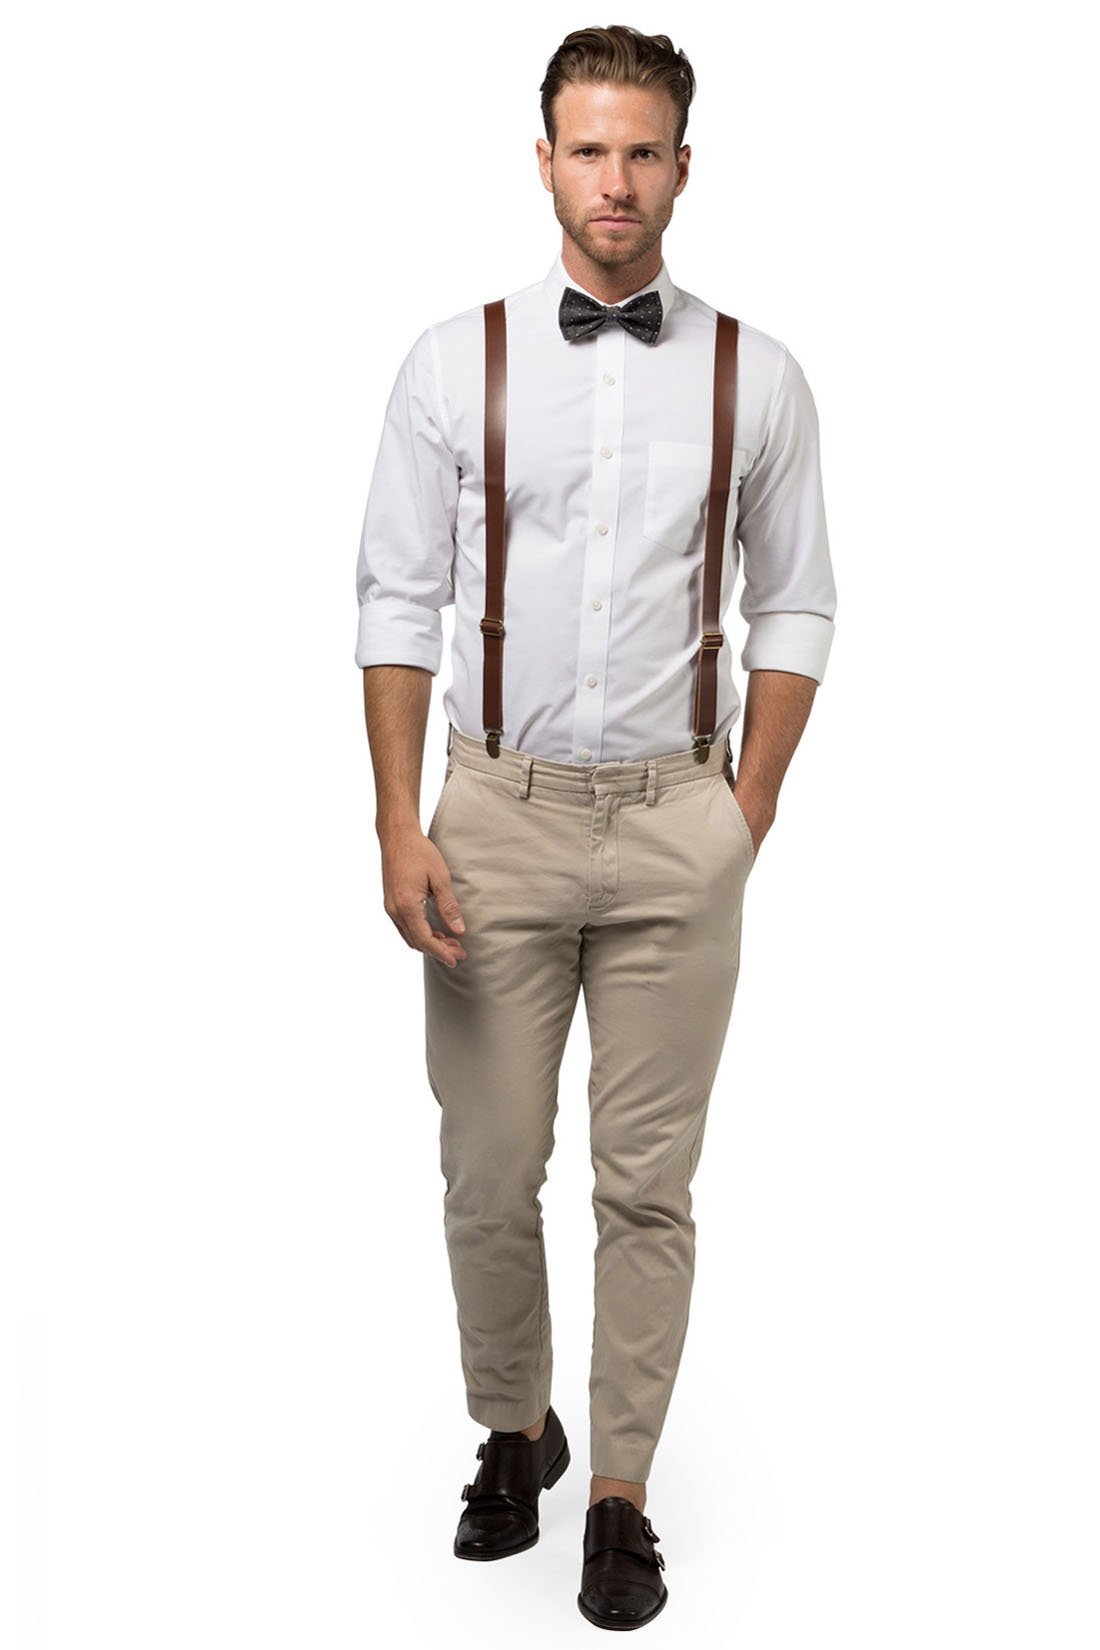 Brown Leather Suspenders & Black Polka Dot Bow Tie